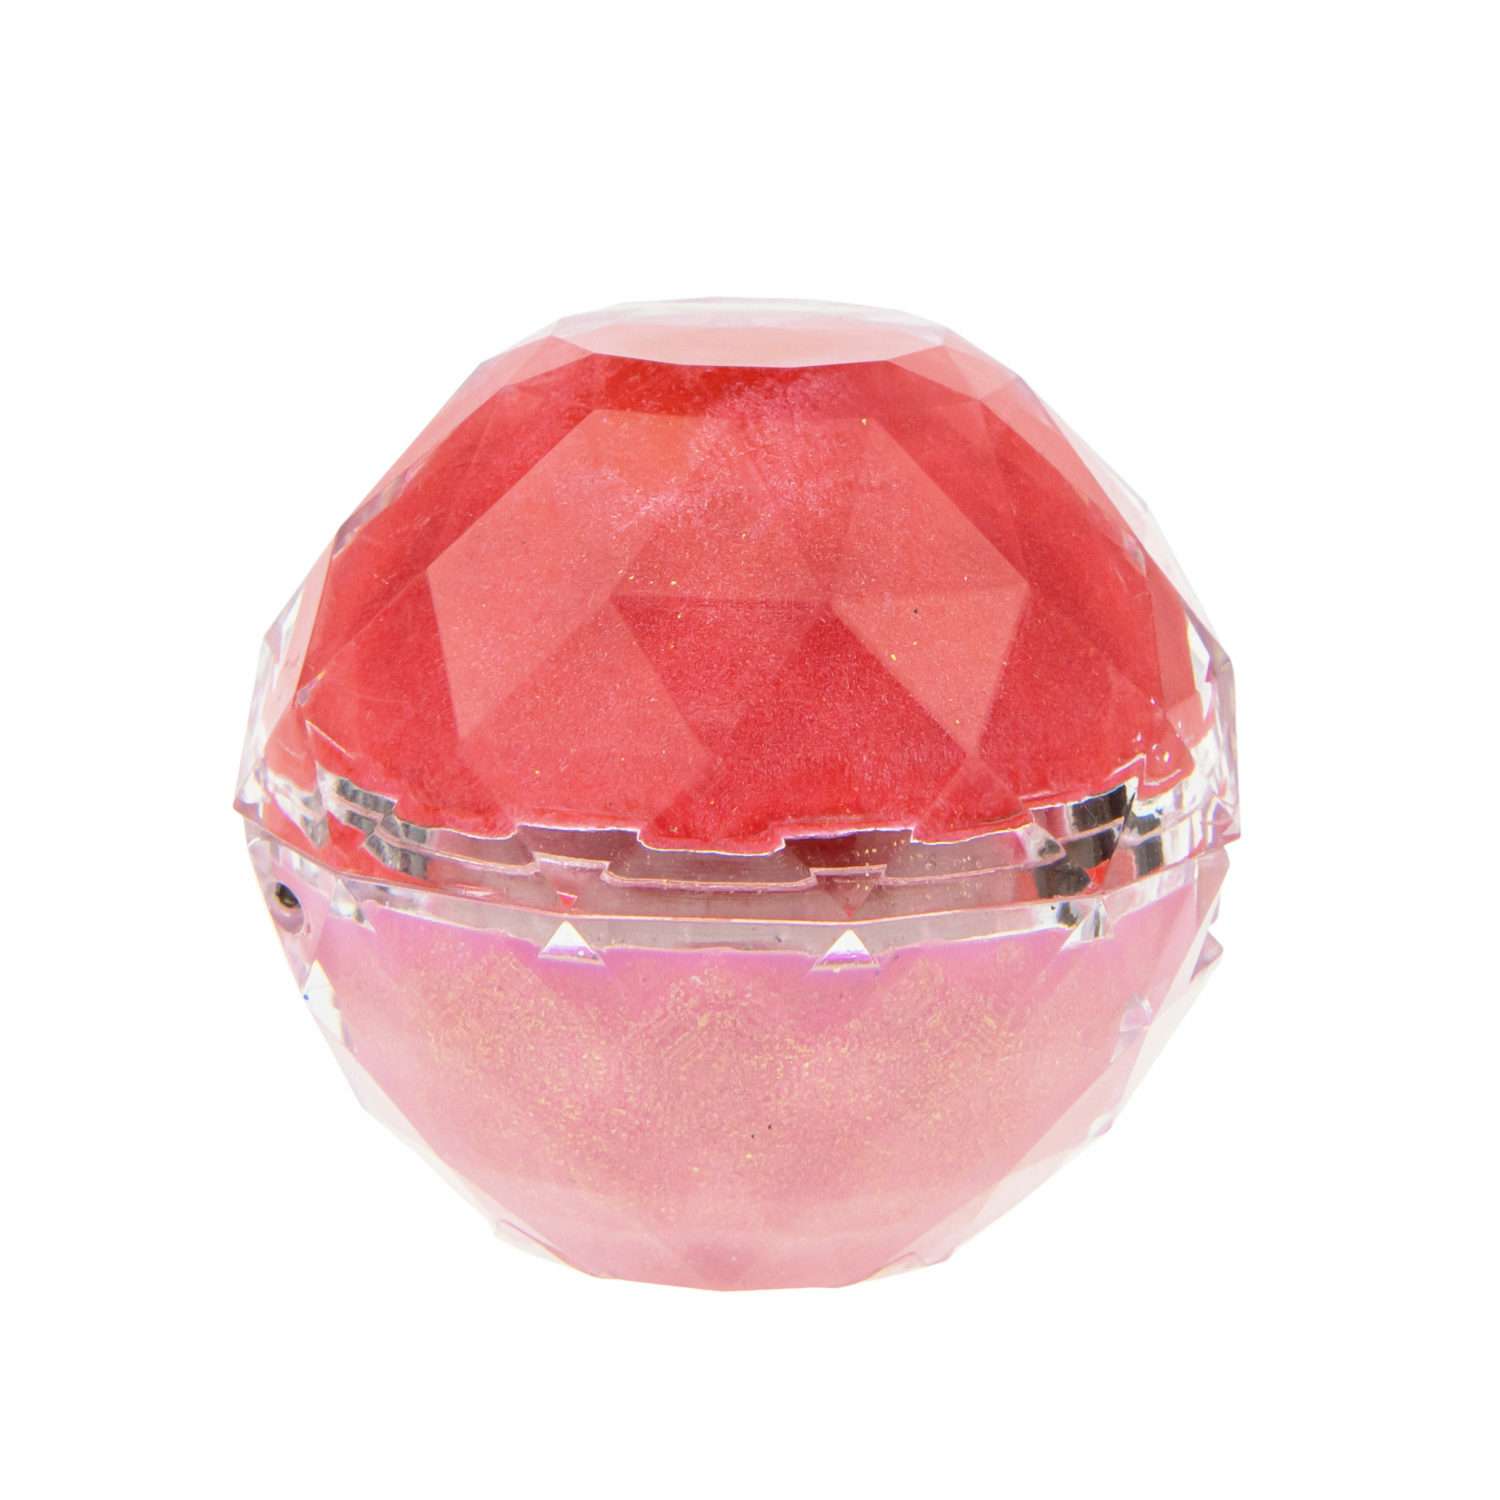 Блеск для губ Lukky Даймонд 2 в 1 цвет конфетно-розовый и бледно-розовый - фото 3